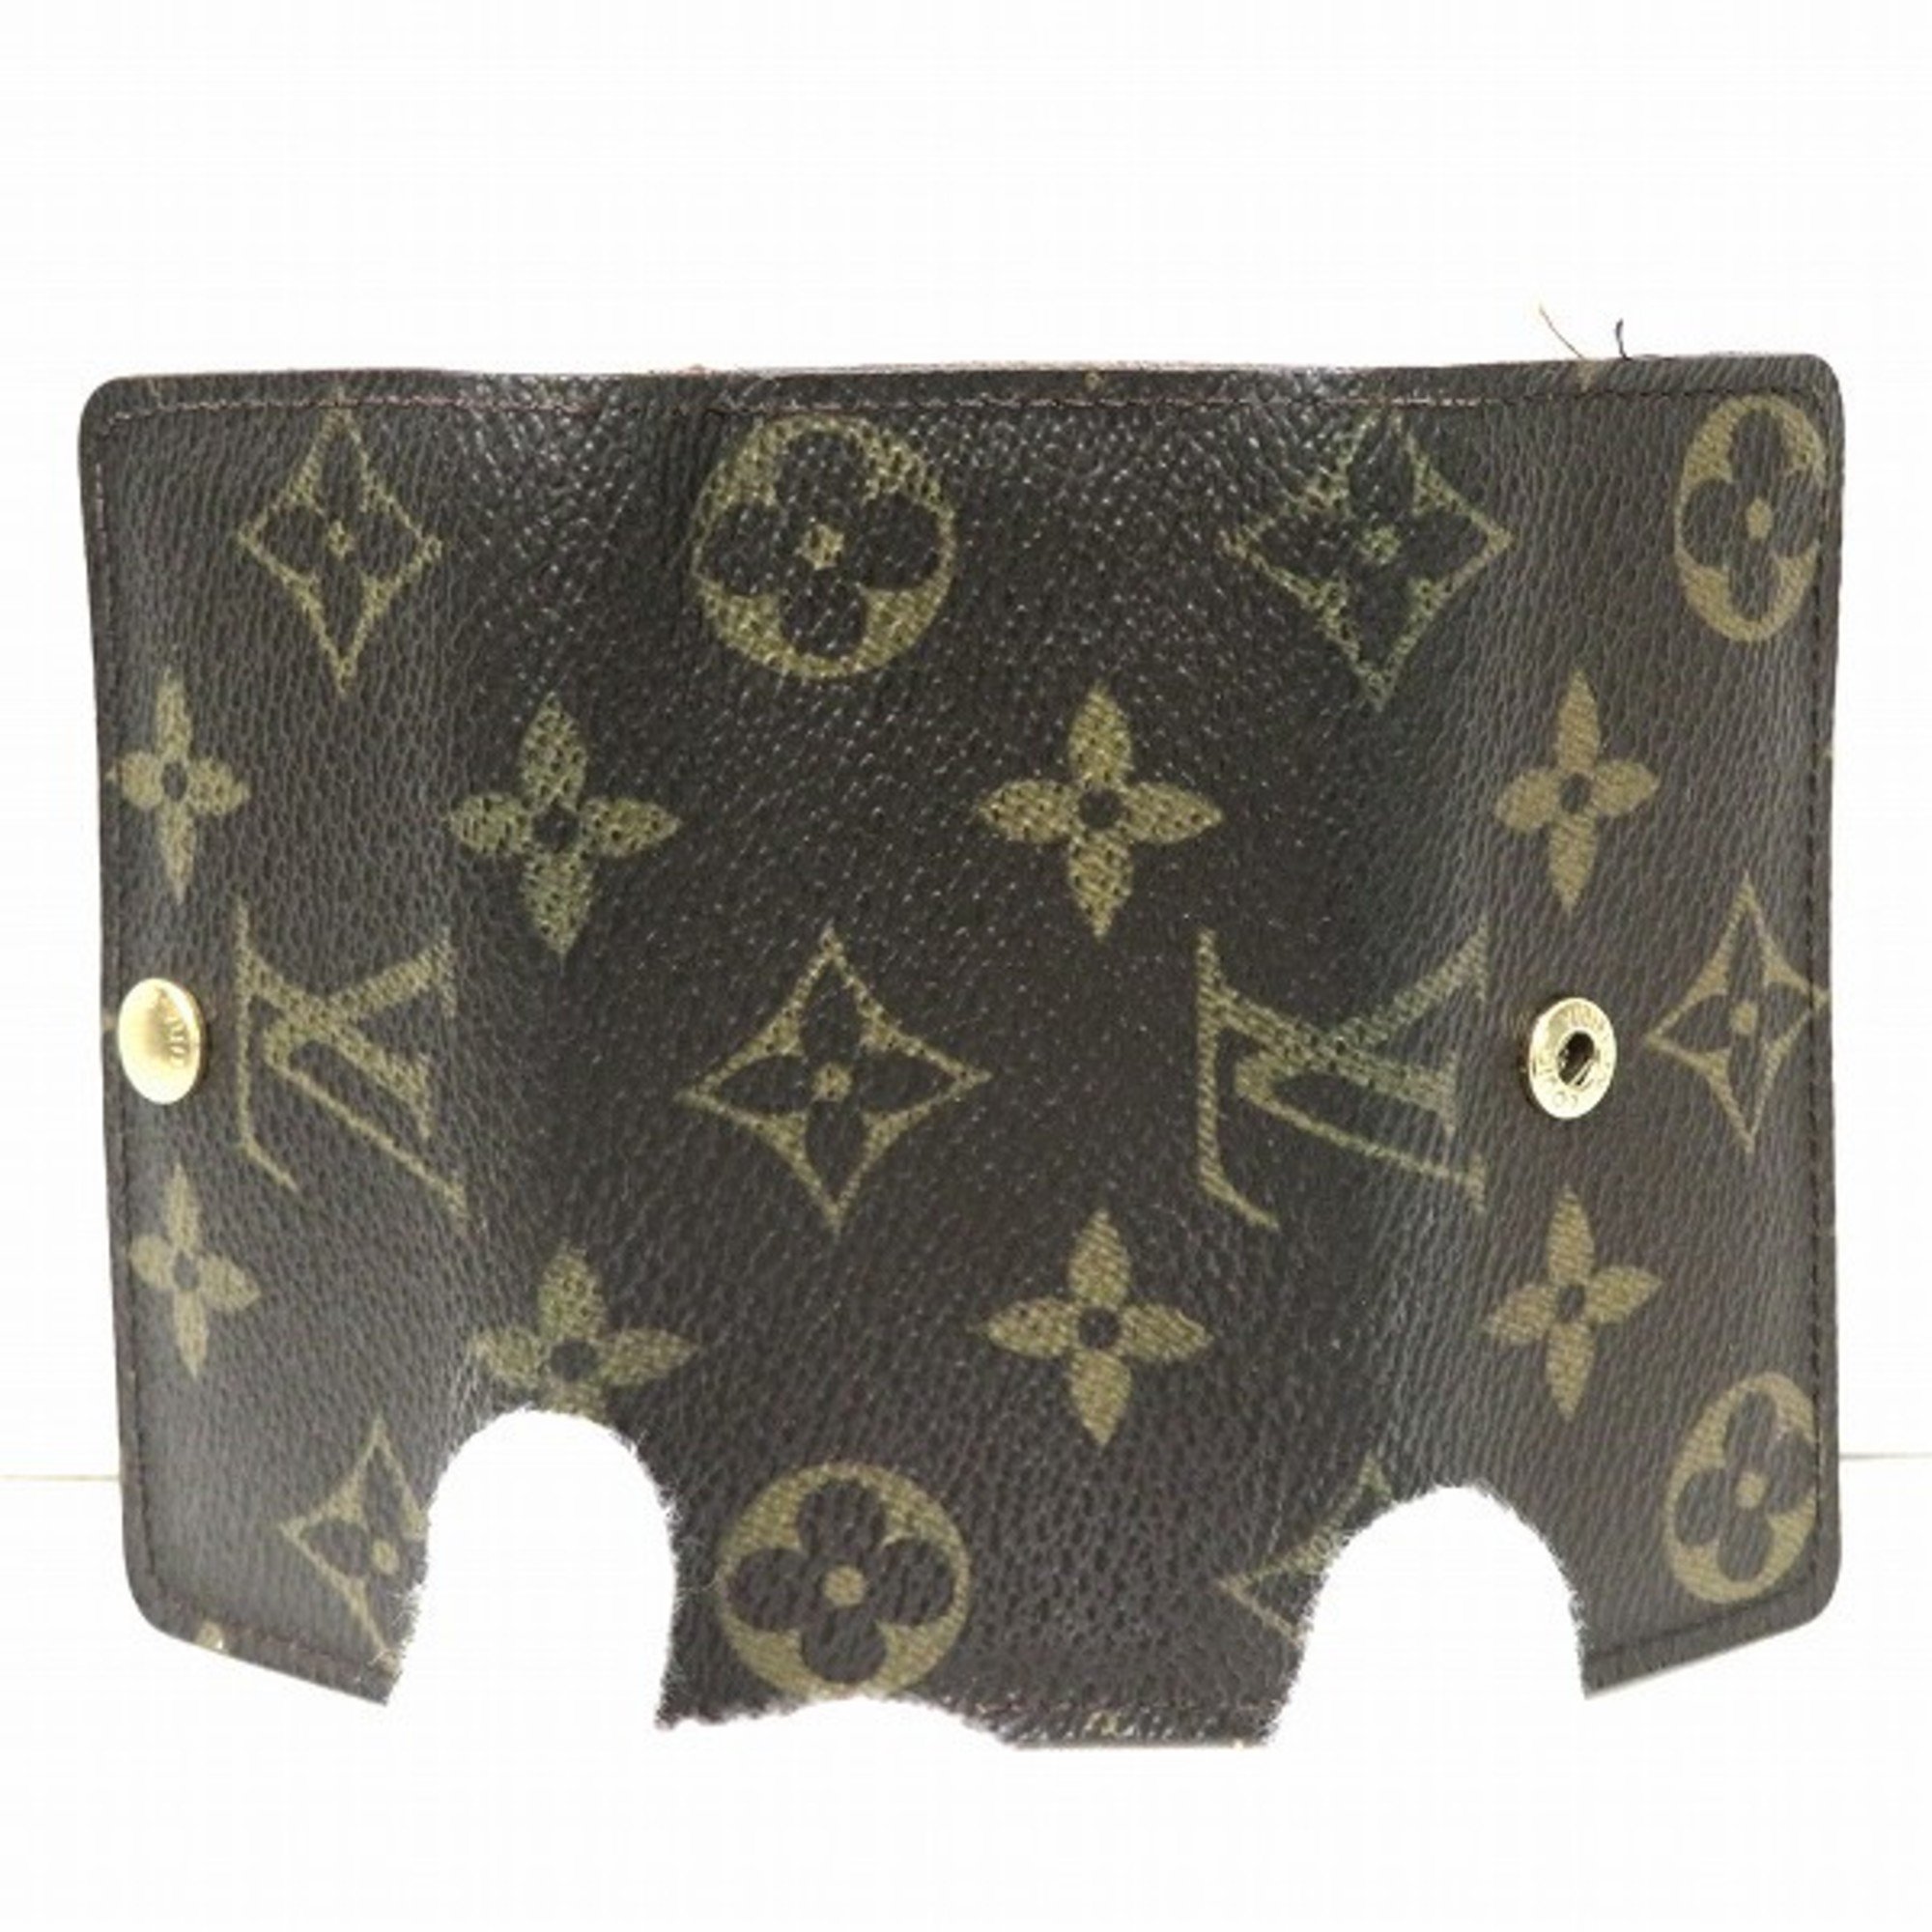 Louis Vuitton Monogram Multicle 4 M62631 Key Case Men's Women's Accessories